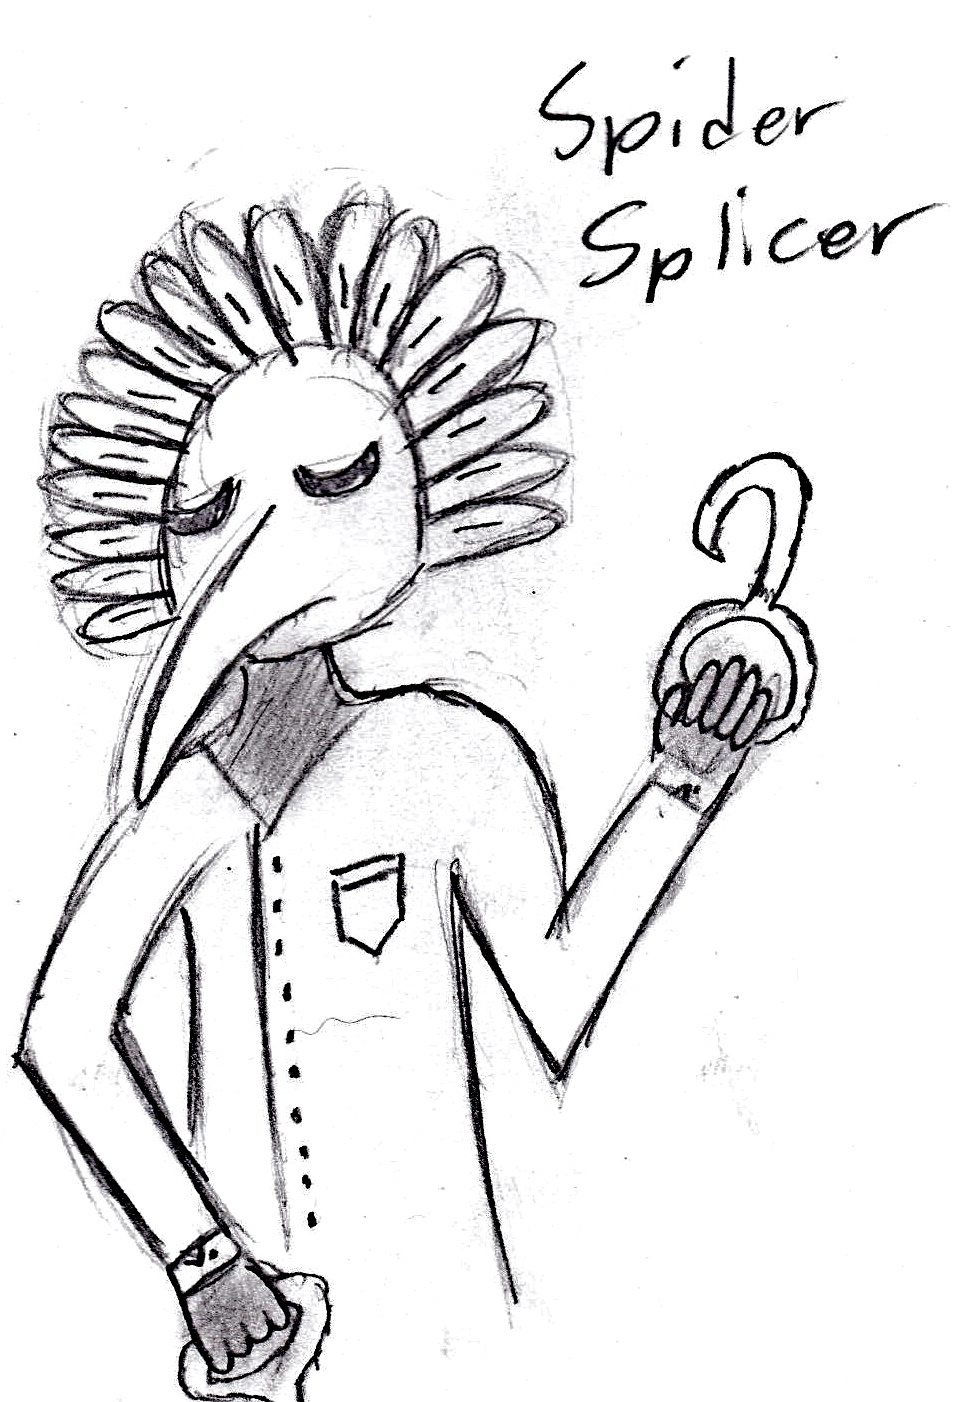 Spider splicer by pichu610